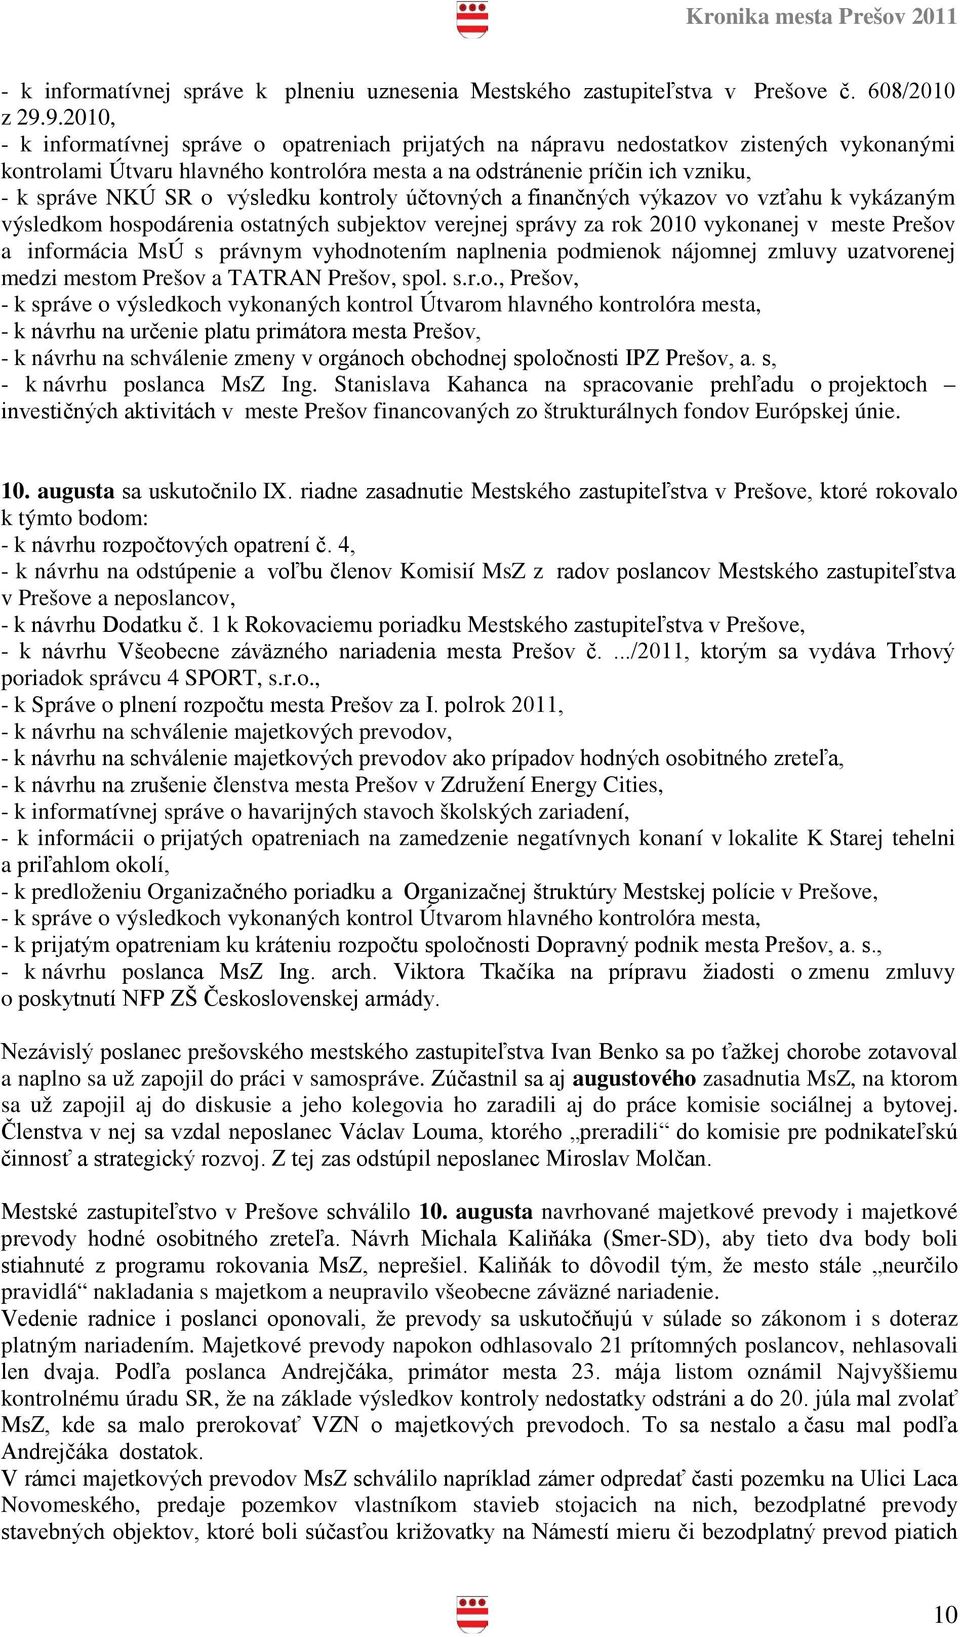 o výsledku kontroly účtovných a finančných výkazov vo vzťahu k vykázaným výsledkom hospodárenia ostatných subjektov verejnej správy za rok 2010 vykonanej v meste Prešov a informácia MsÚ s právnym